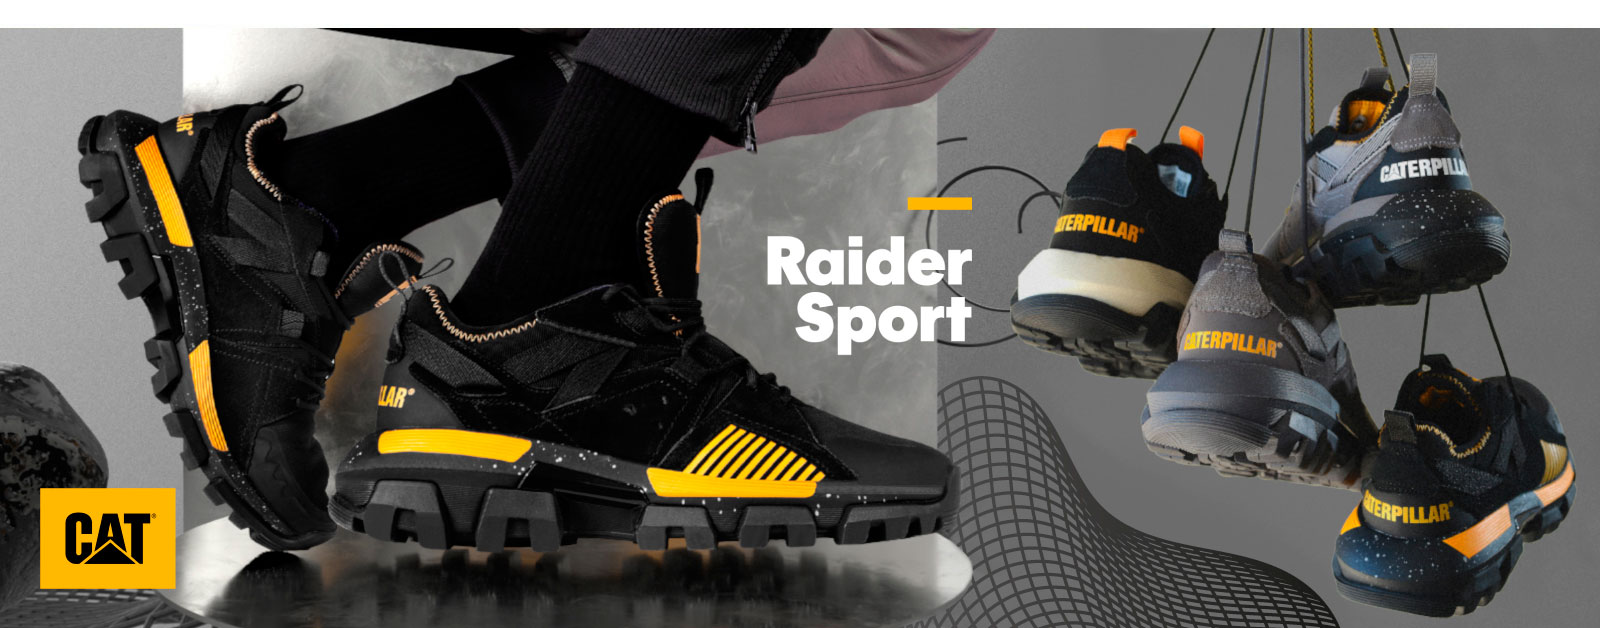 Zapatillas Caterpillar Raider Sport: estilo progresivo y funcionalidad icónica para aprovechar cada oportunidad.